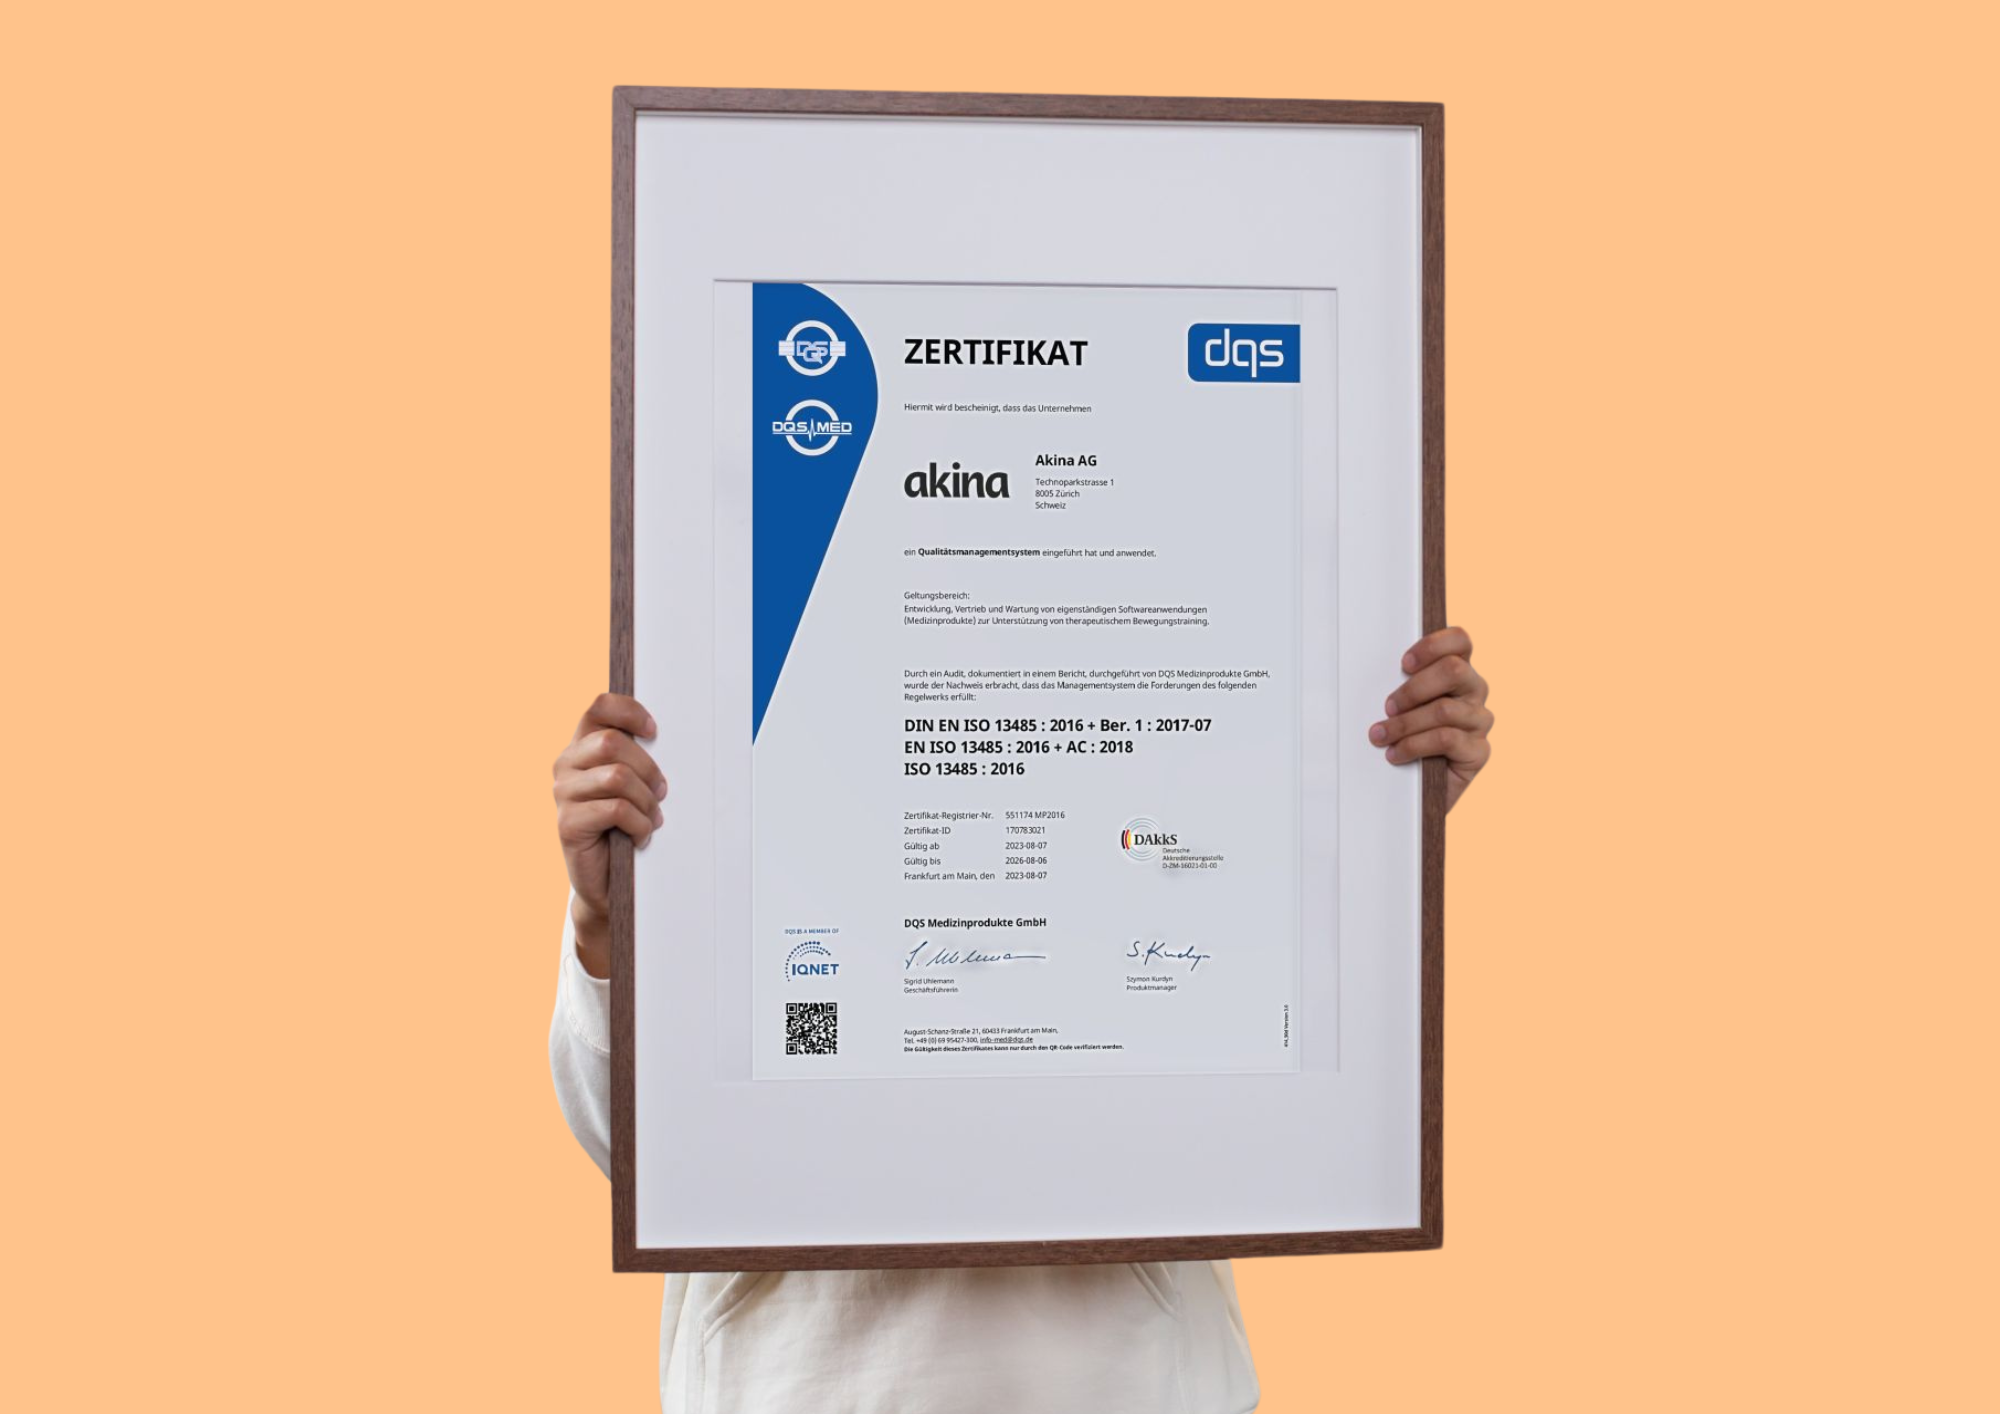 ISO 13485 Zertifikat von Akina, eingerahmt. Oranger Hintergrund.